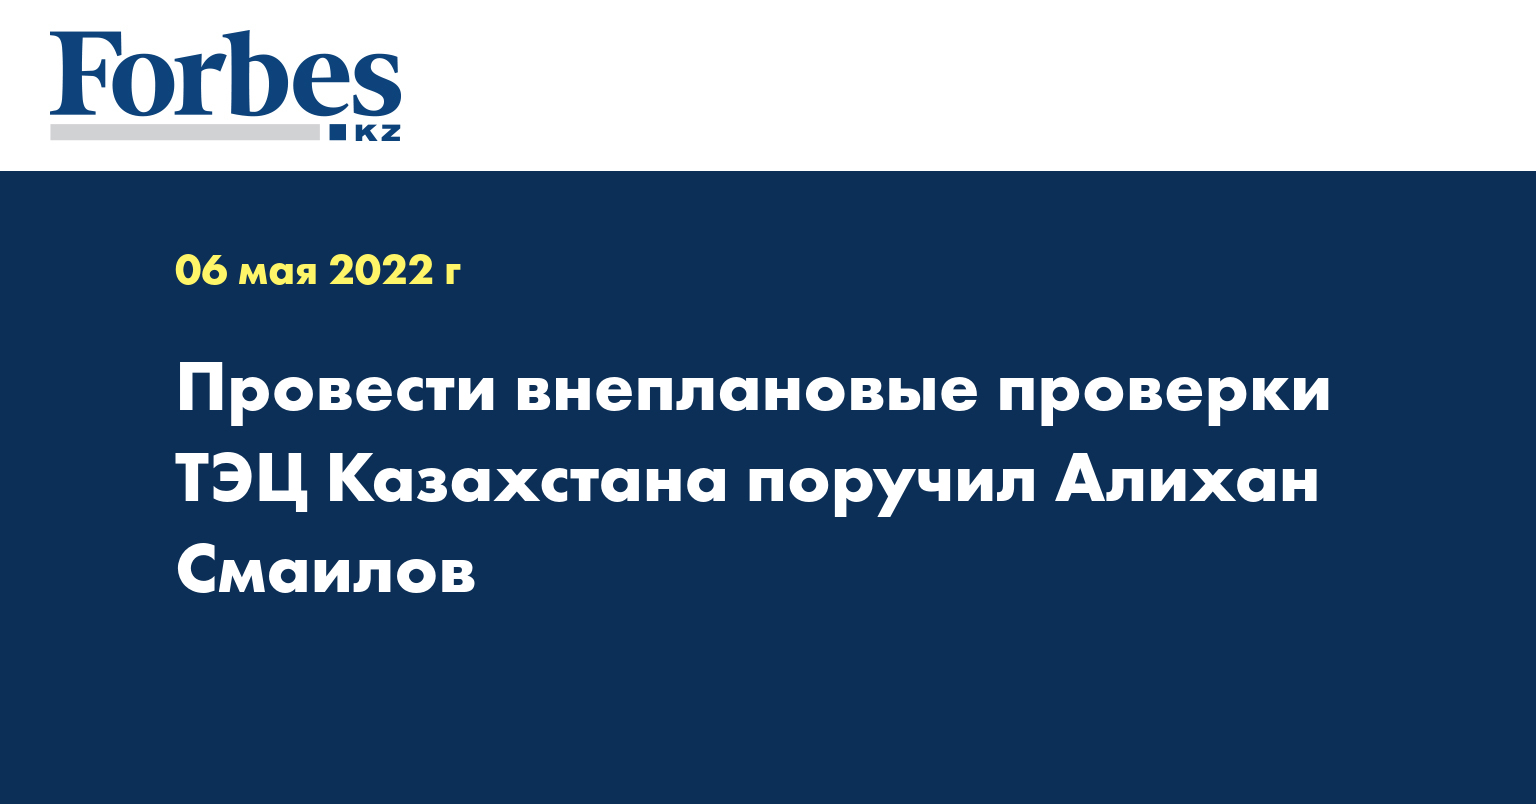 Провести внеплановые проверки ТЭЦ Казахстана поручил Алихан Смаилов